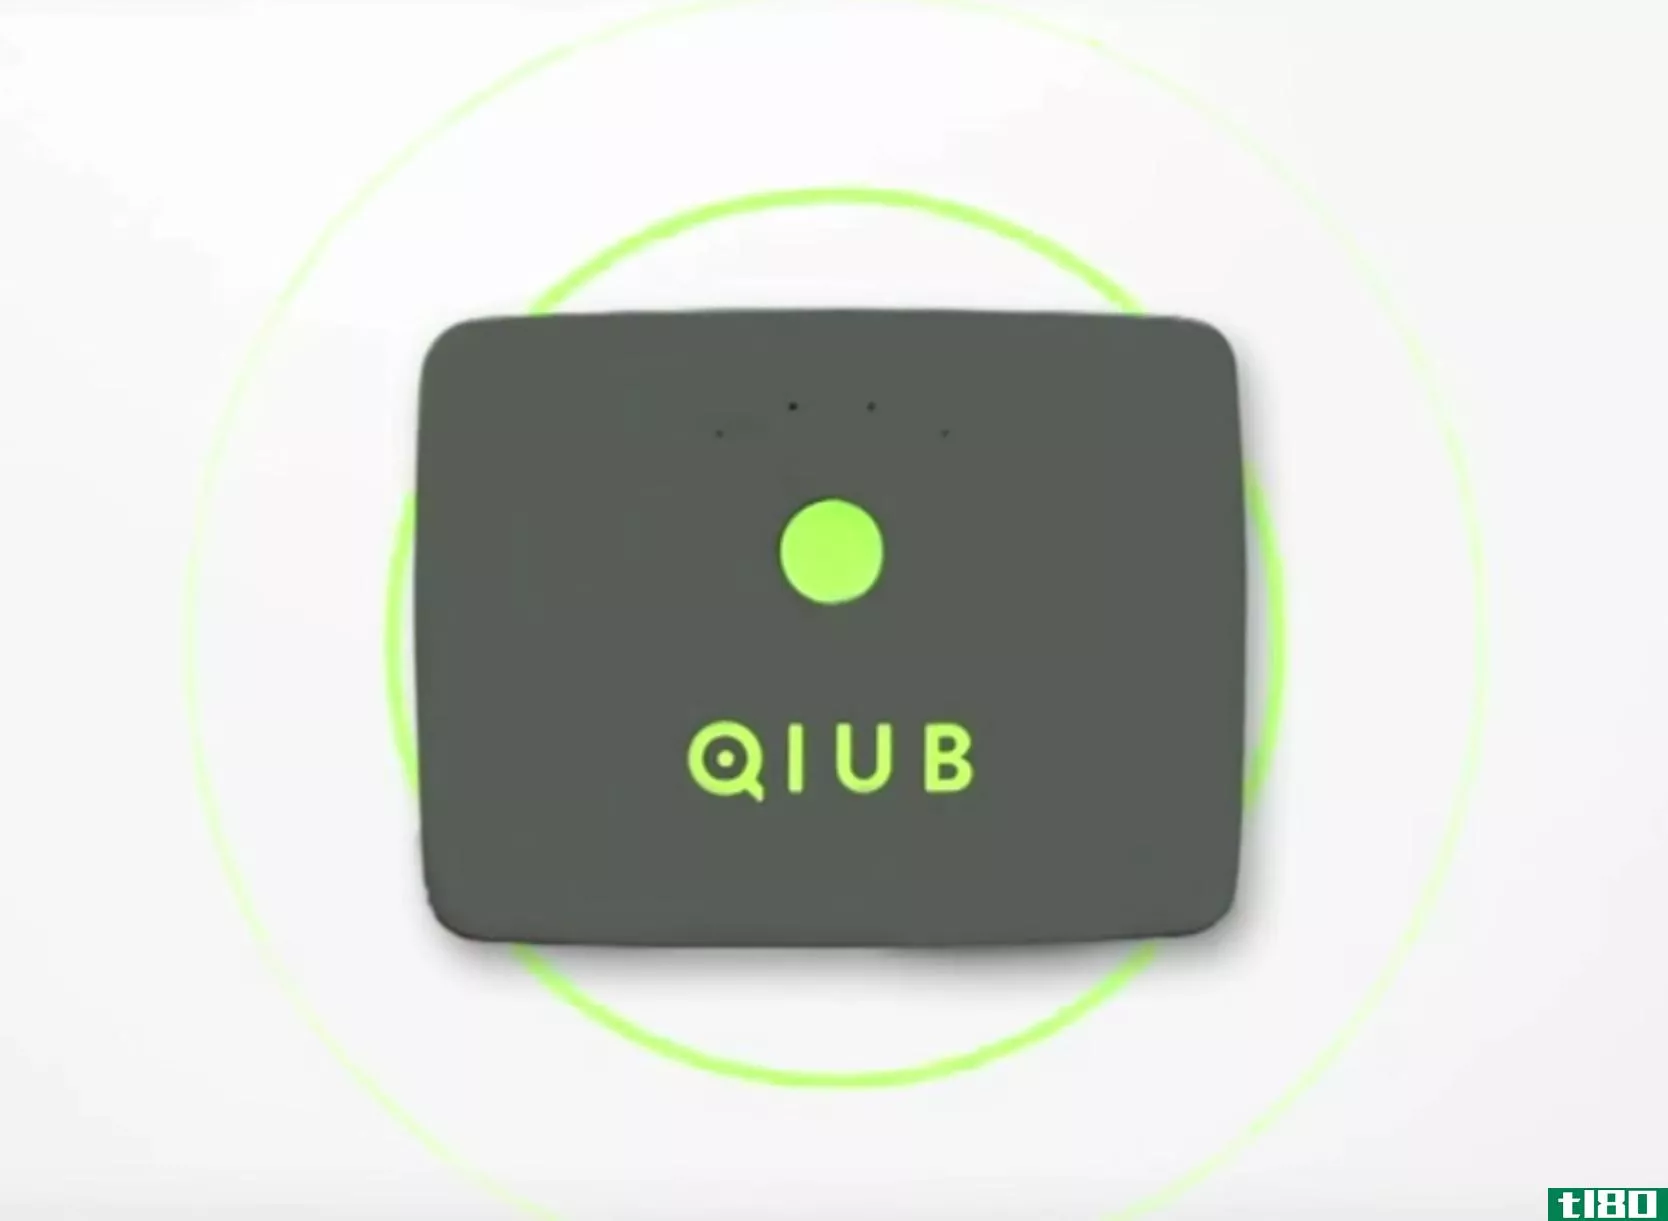 qiub是一个你可能不需要的无焦点的电源库